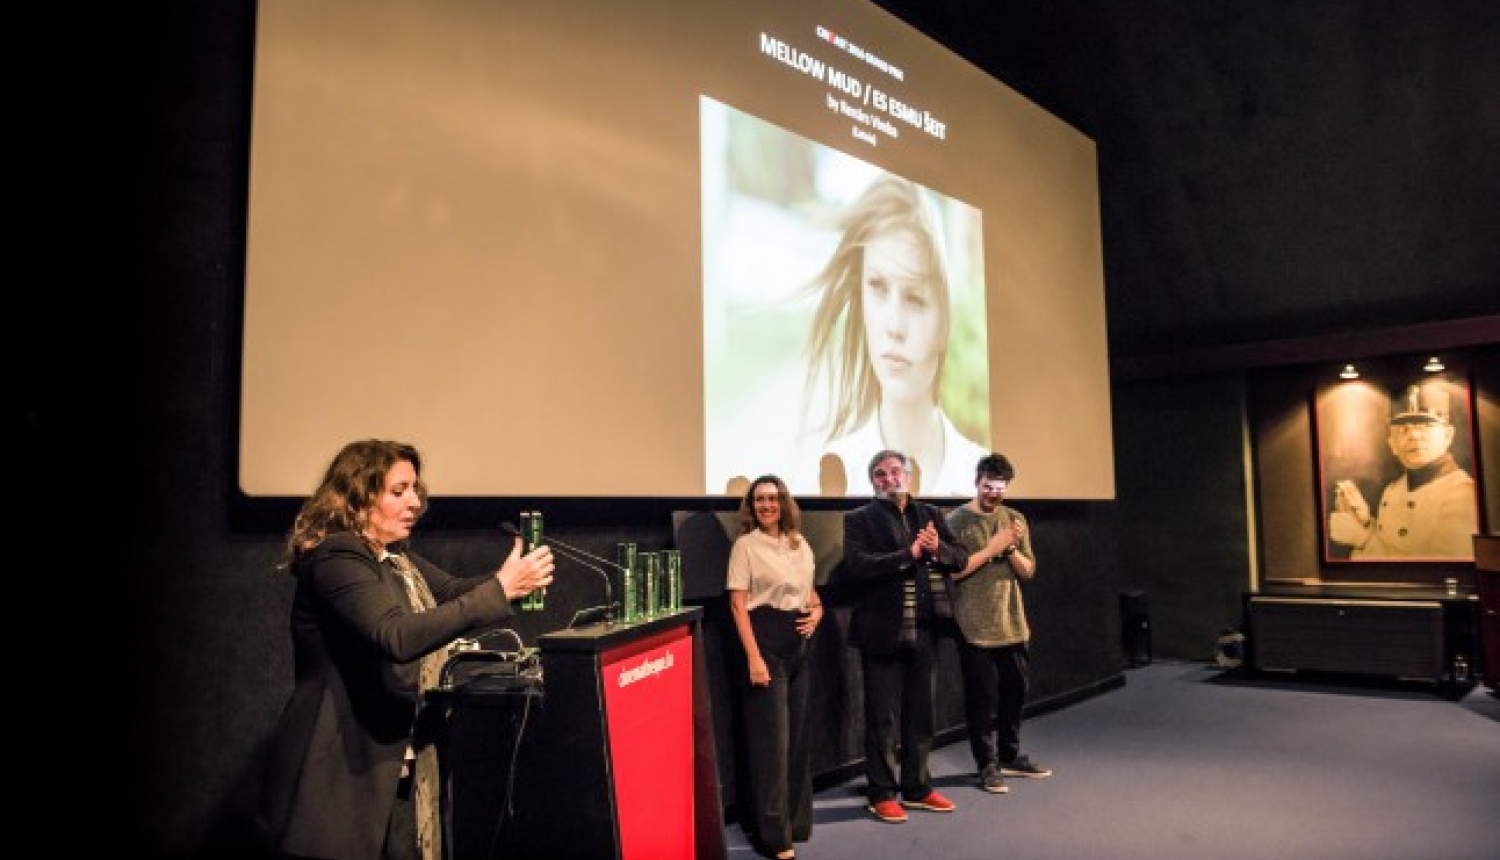 Spēlfilma “Es esmu šeit” ieguvusi galveno balvu CinEast kinofestivālā Luksemburgā